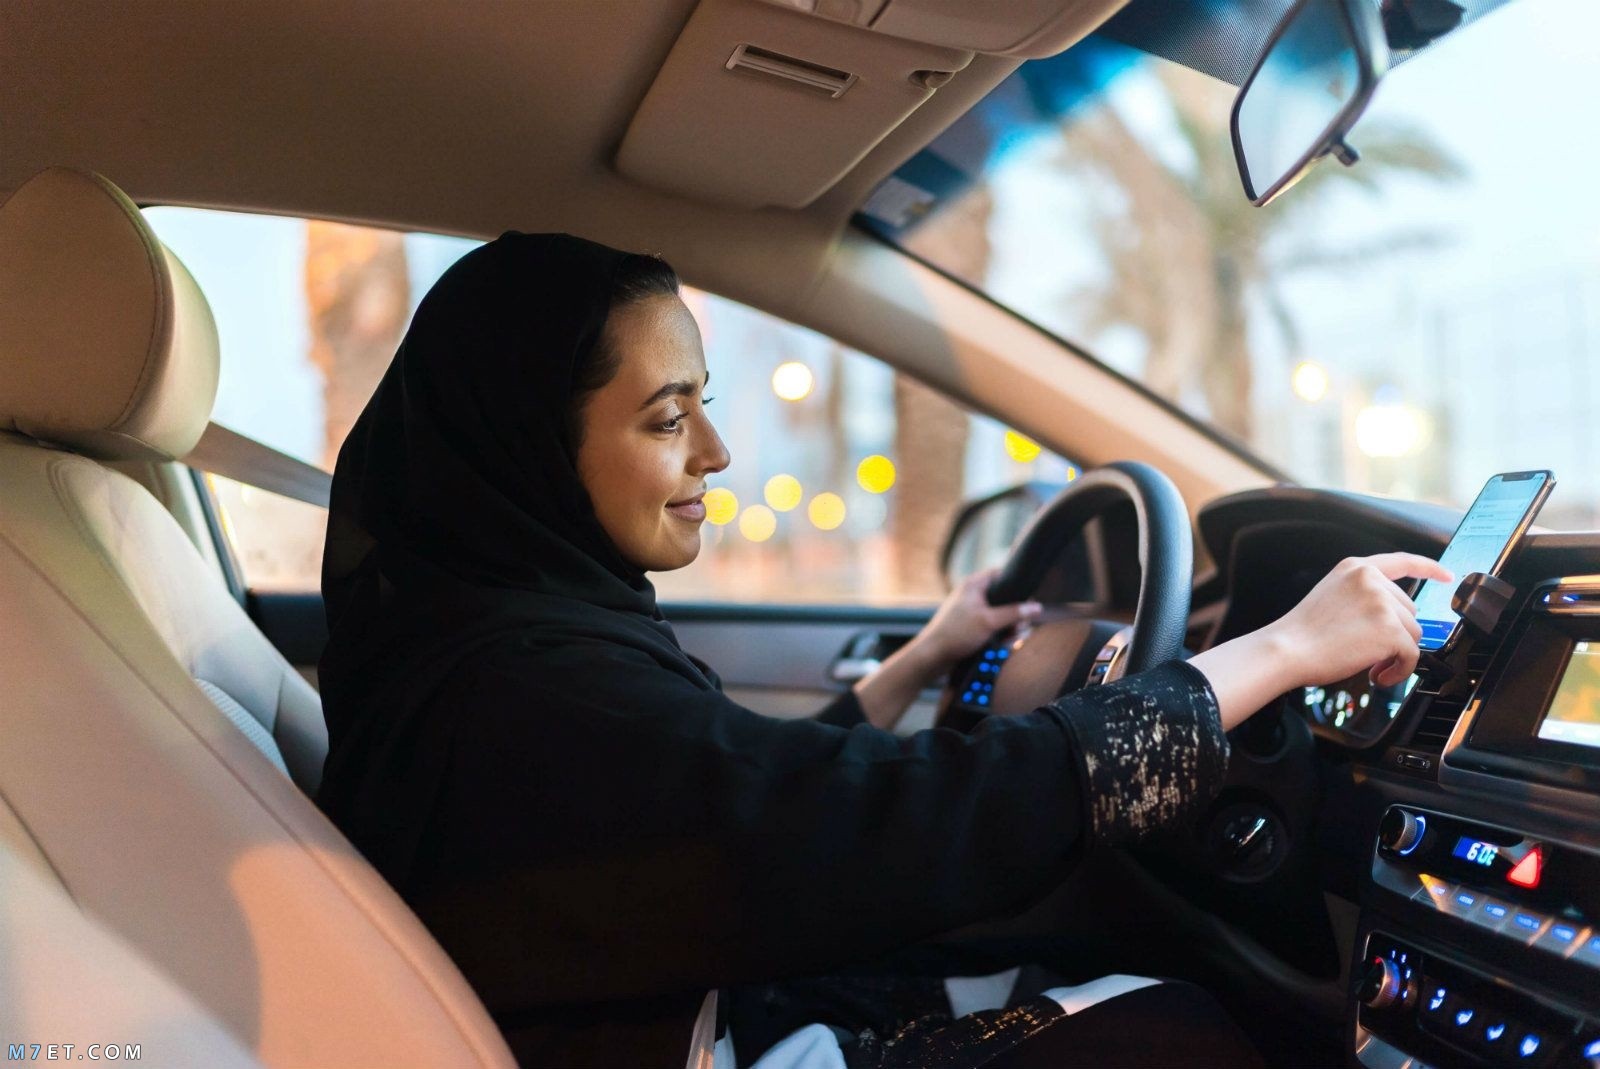  استخراج رخصة قيادة للنساء